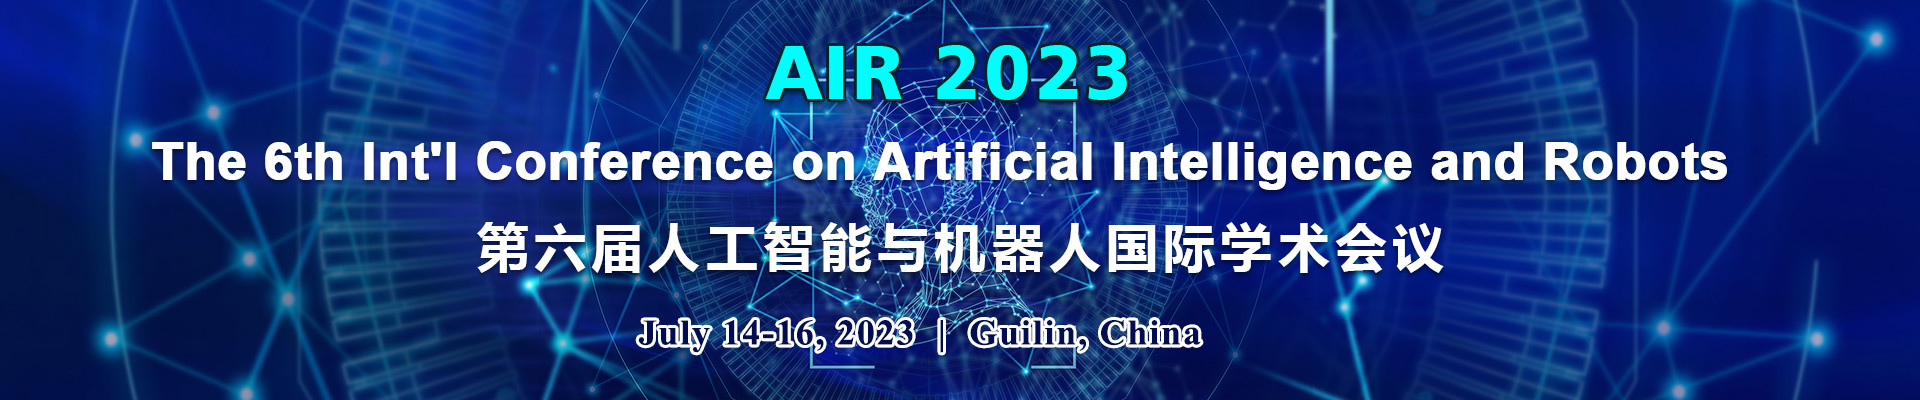 第六届人工智能与机器人国际学术会议 (AIR 2023)